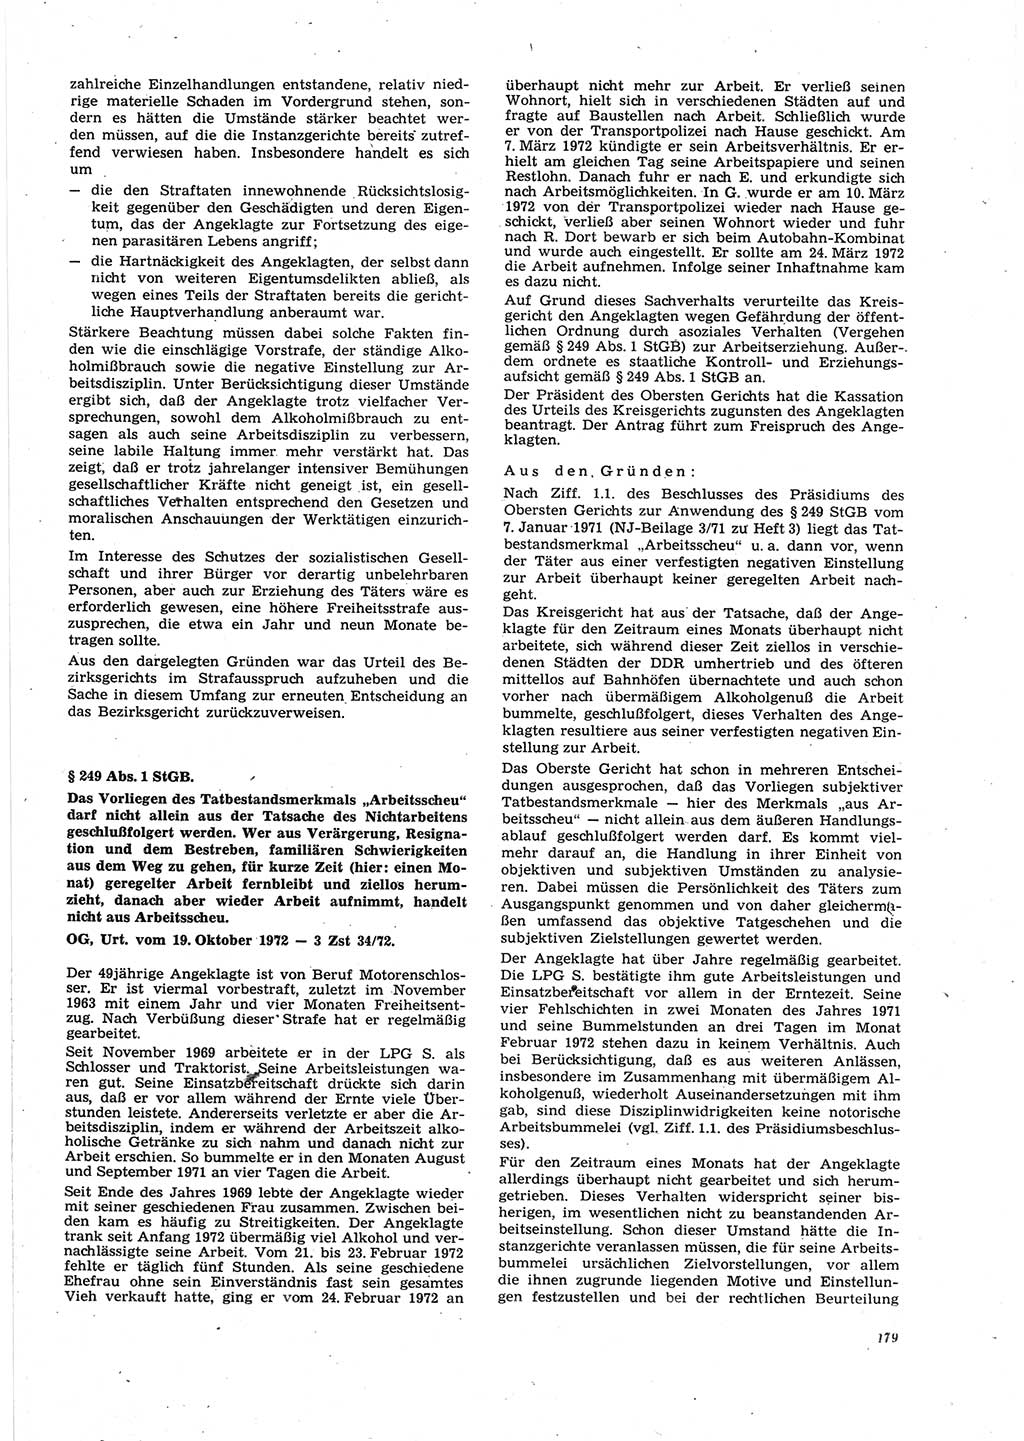 Neue Justiz (NJ), Zeitschrift für Recht und Rechtswissenschaft [Deutsche Demokratische Republik (DDR)], 27. Jahrgang 1973, Seite 179 (NJ DDR 1973, S. 179)